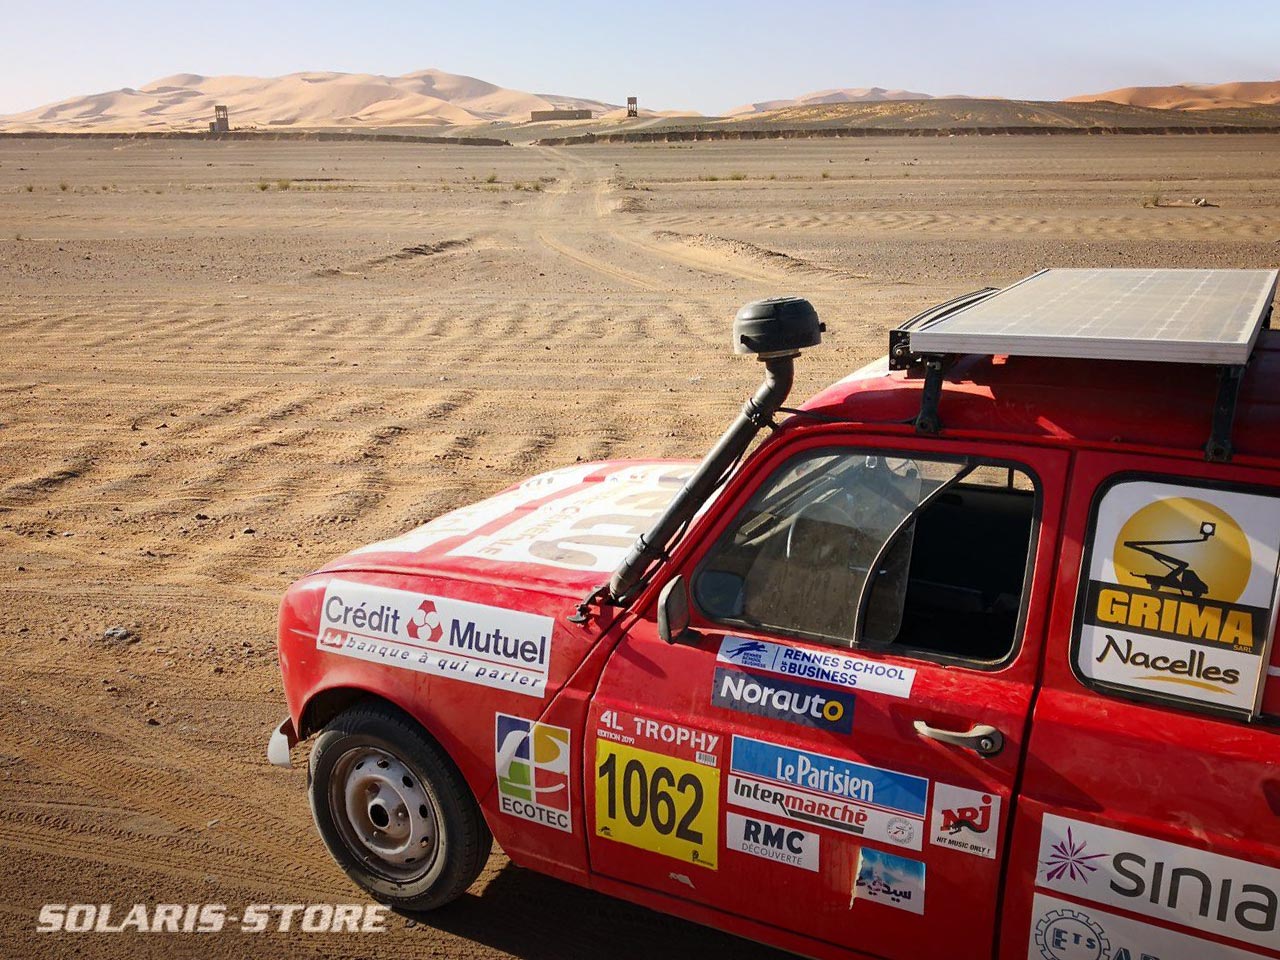 Panneau solaire embarqué sur une voiture Renault 4l Trophy dans le désert